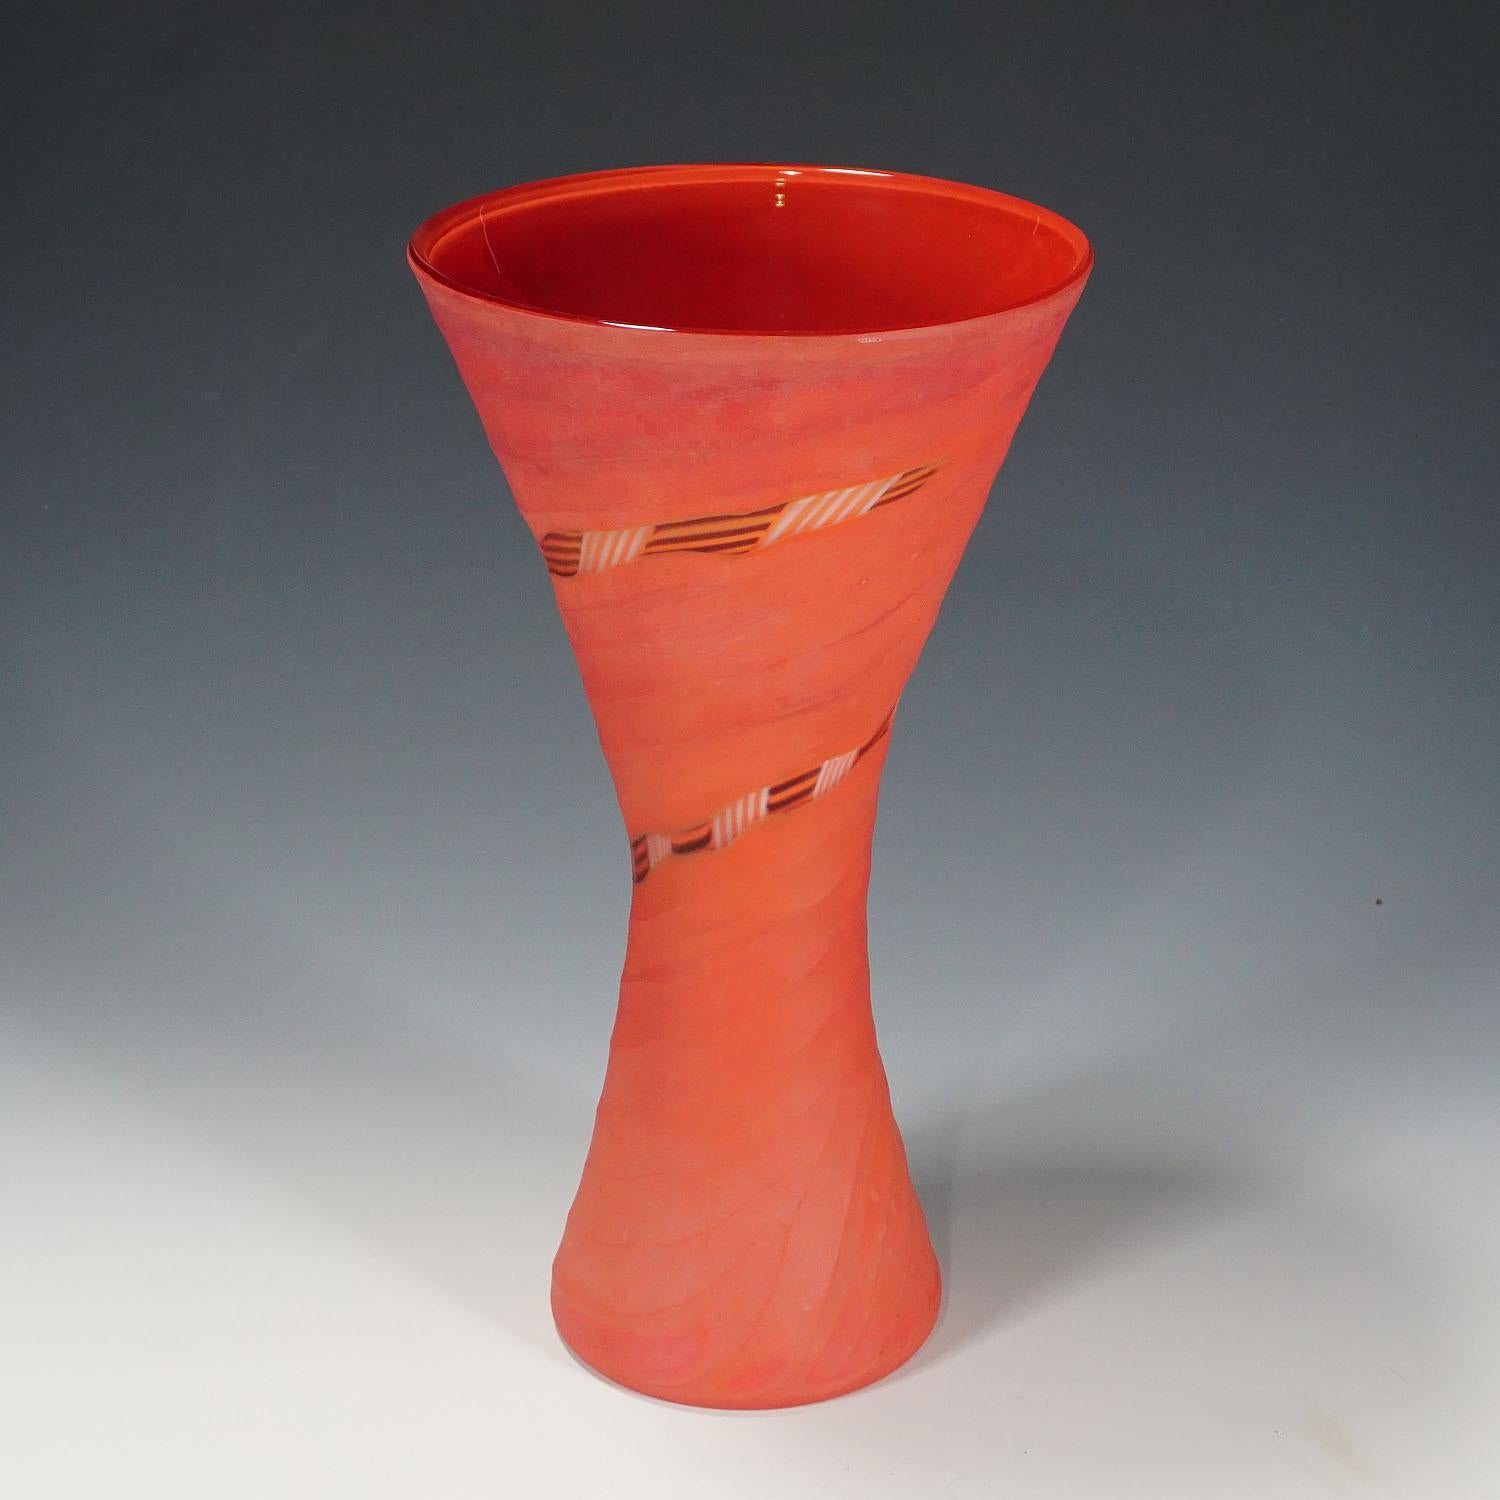 Eine Vase aus der Serie Manto, entworfen von Rodolfo Dordoni für Venini. Verschmolzenes korallenrotes, klares und schwarzes Glas, Oberfläche mit Mattschliff. Venini, Murano 2001. Mit Venini-Etikett und eingeritzter Signatur auf dem Sockel.

Maße: